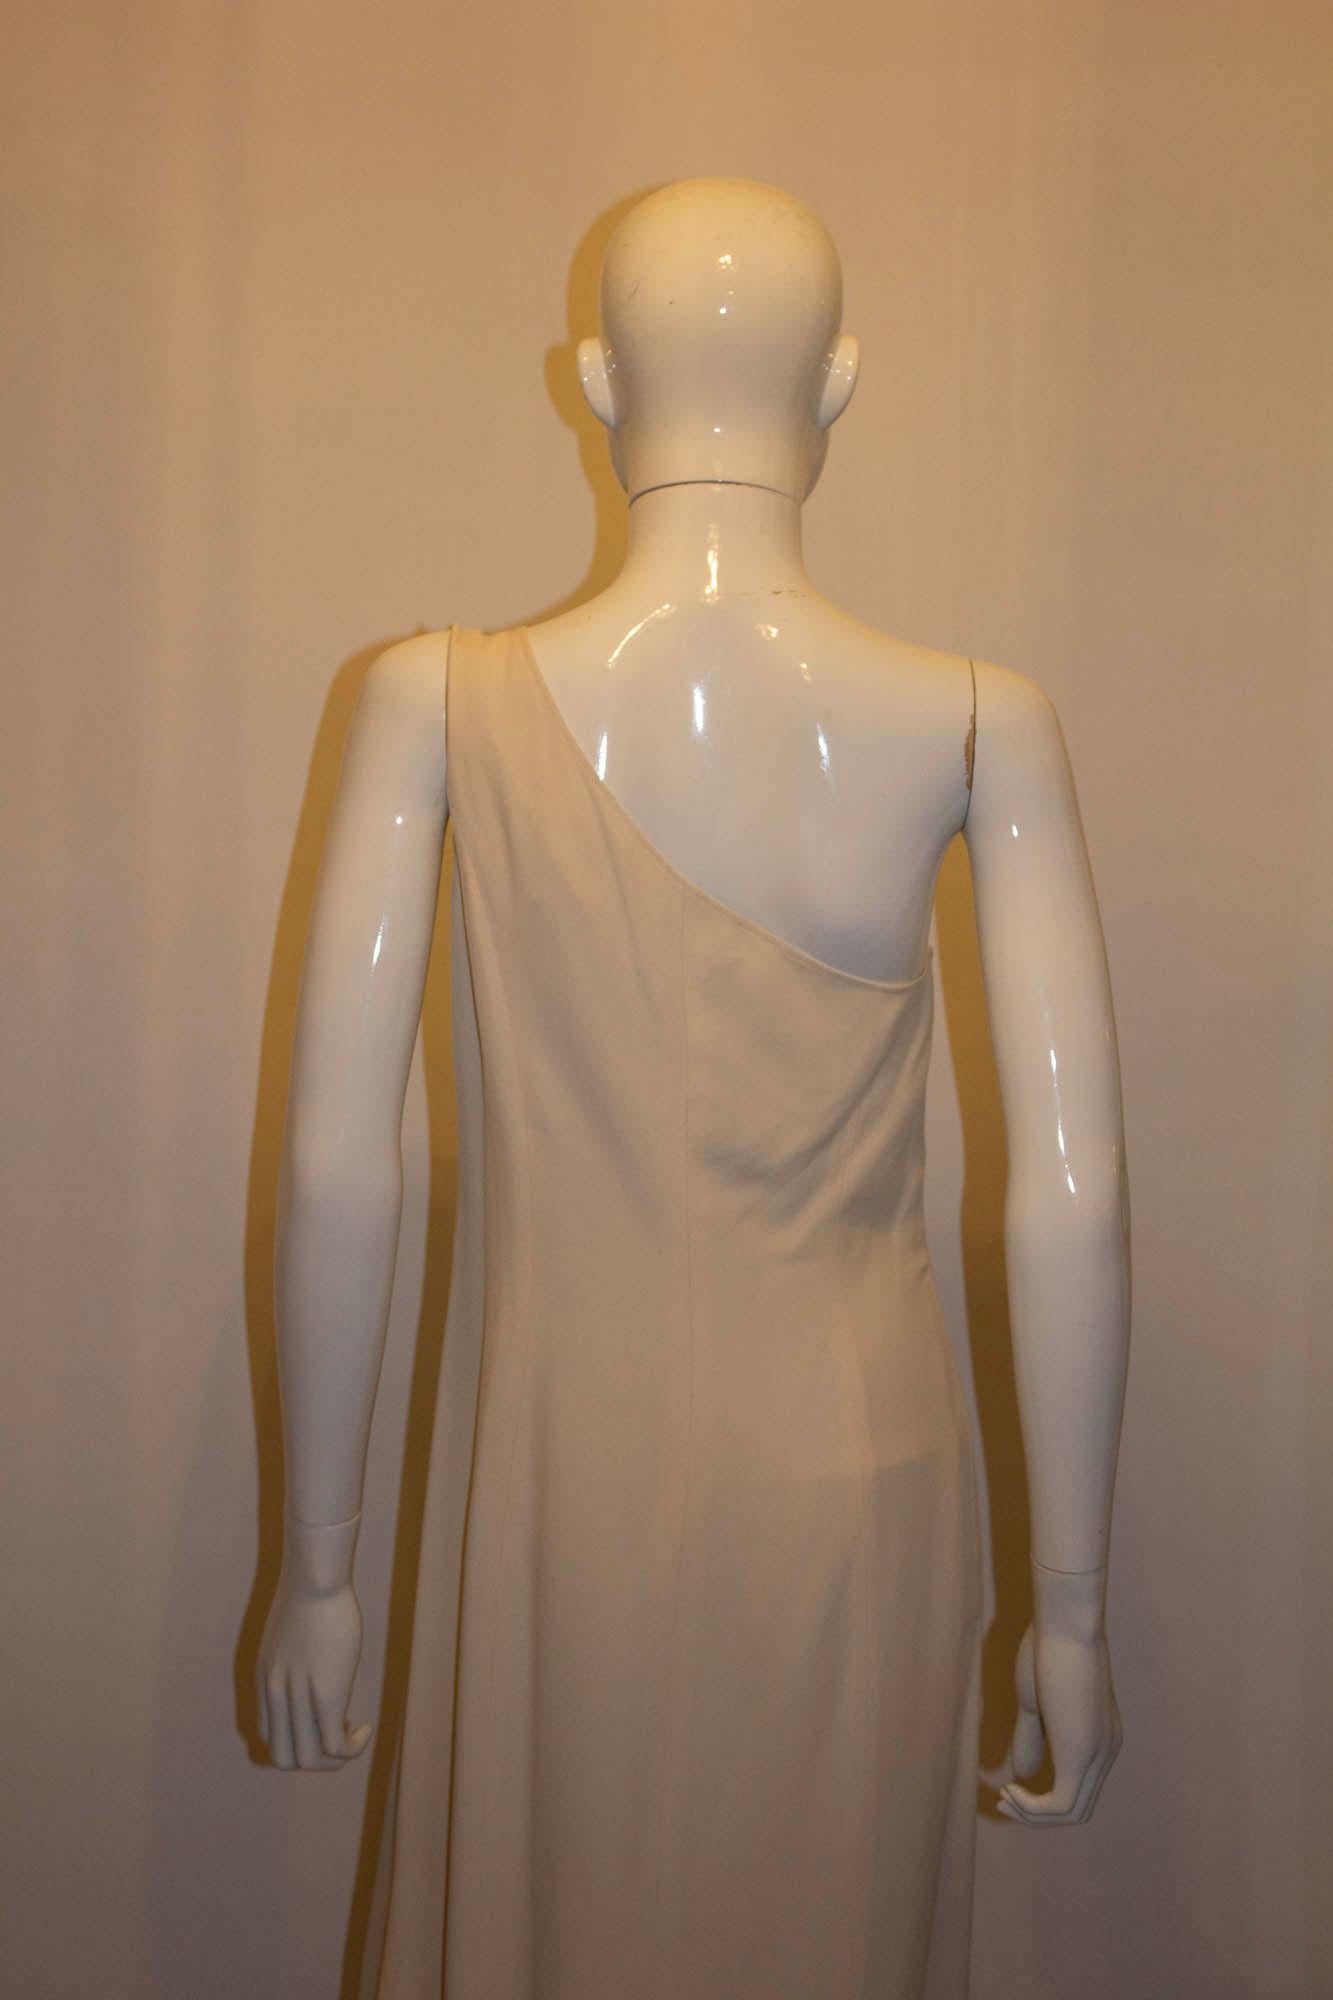 Ein schickes und ausgefallenes Vintage-Kreppkleid von Claude Montana. Das Kleid hat eine Schulter, ist vollständig gefüttert und hat vorne einen Schlitz von 25'.  Hergestellt in Italien, Größe 42/8.
Maße: Büste 36/7, Länge 54''